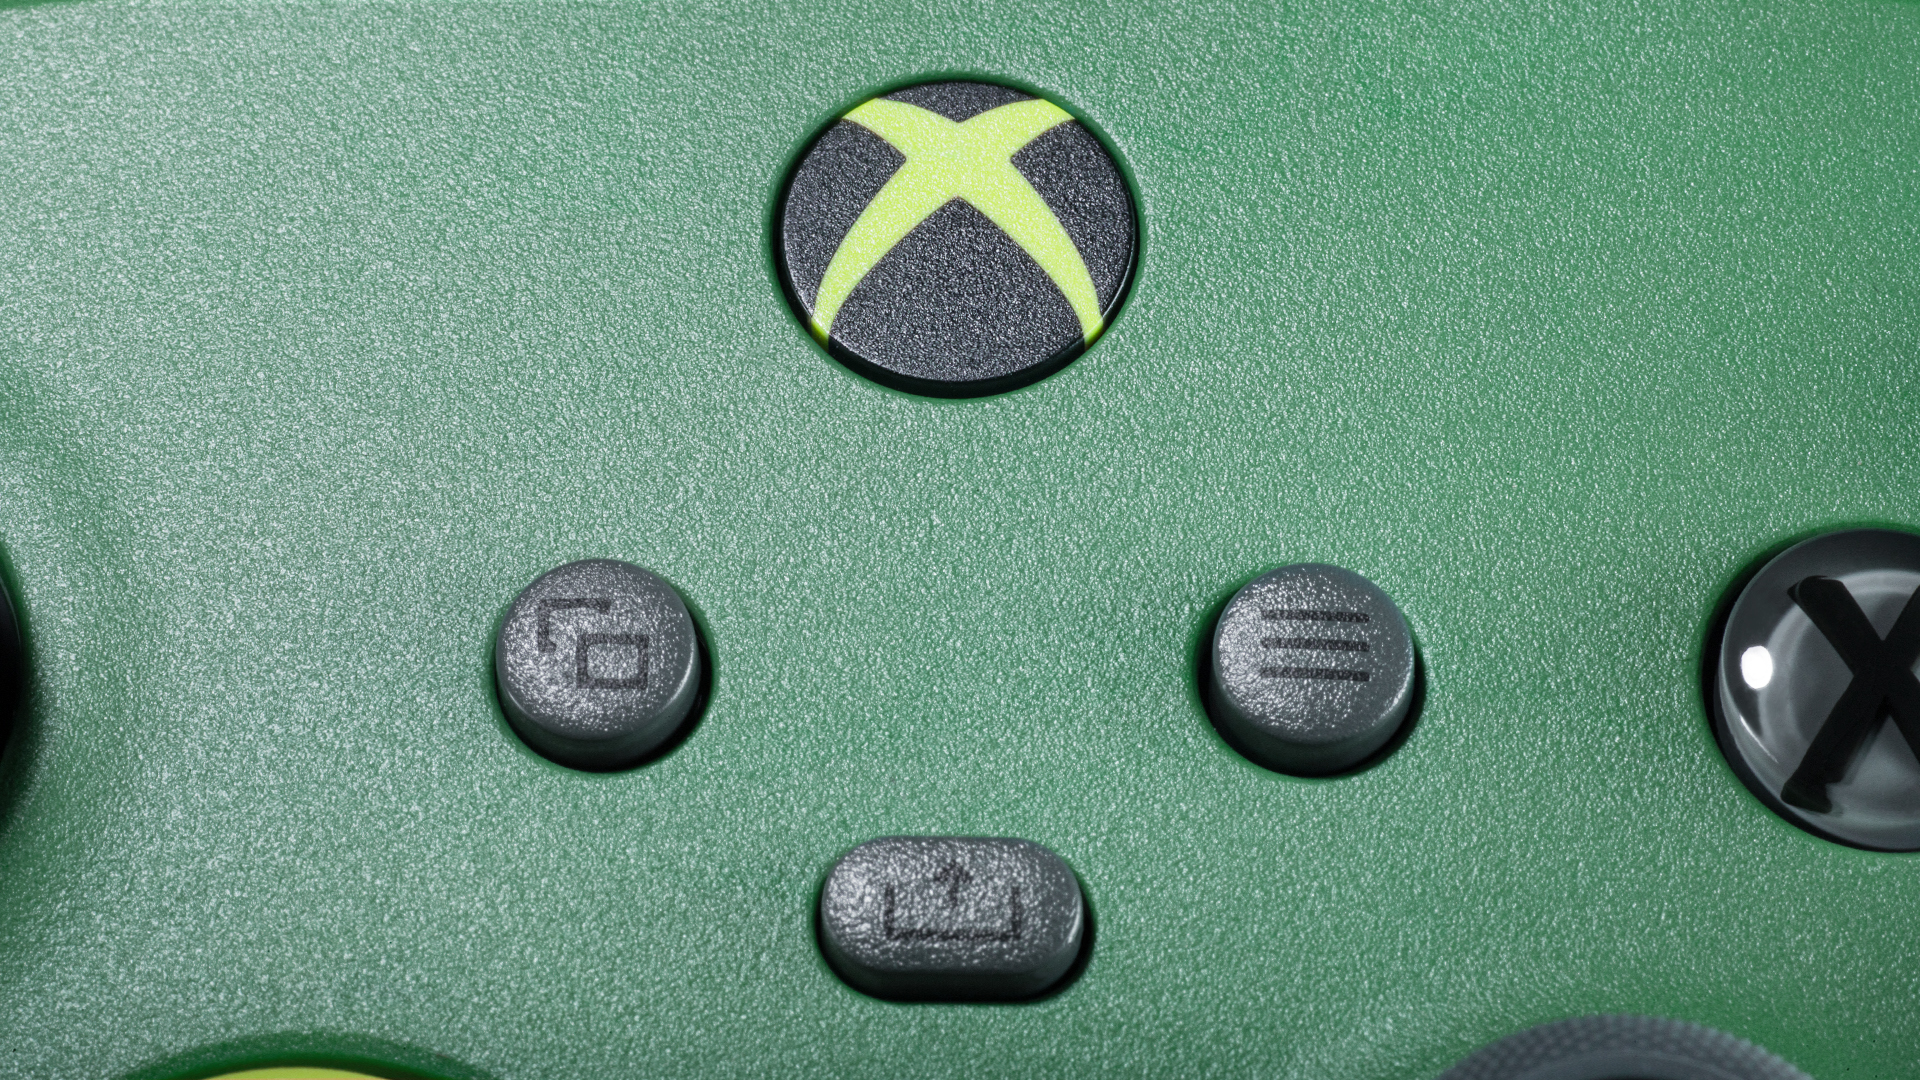 Vous ne devinerez jamais de quoi est faite cette nouvelle et très jolie manette Xbox !